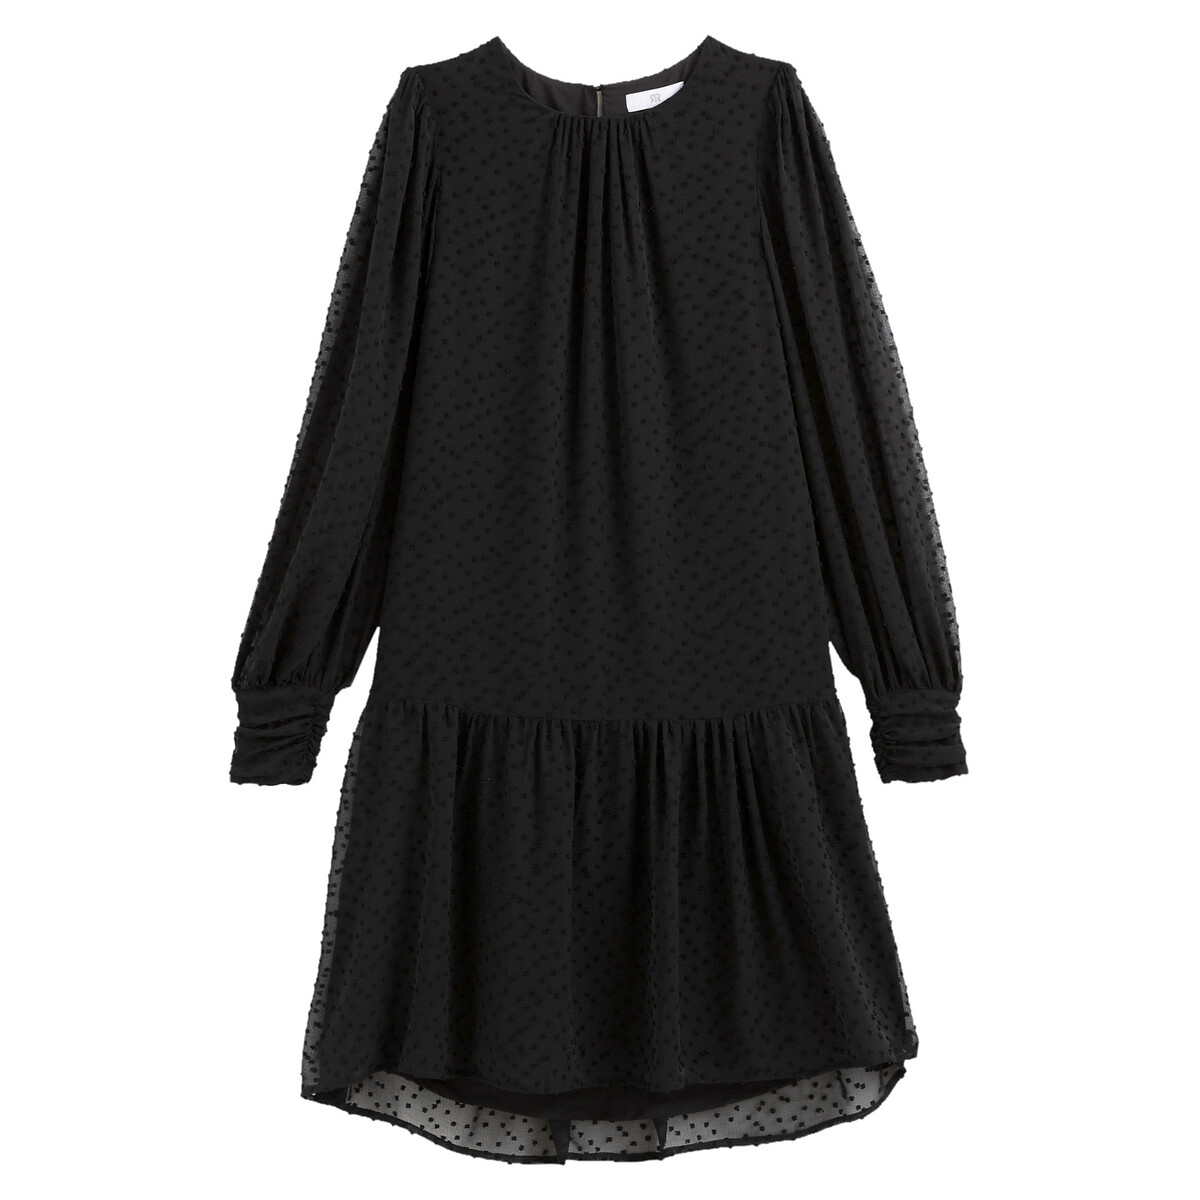 Платье LaRedoute С длинными рукавами с вышивкой гладью 48 (FR) - 54 (RUS) черный, размер 48 (FR) - 54 (RUS) С длинными рукавами с вышивкой гладью 48 (FR) - 54 (RUS) черный - фото 5